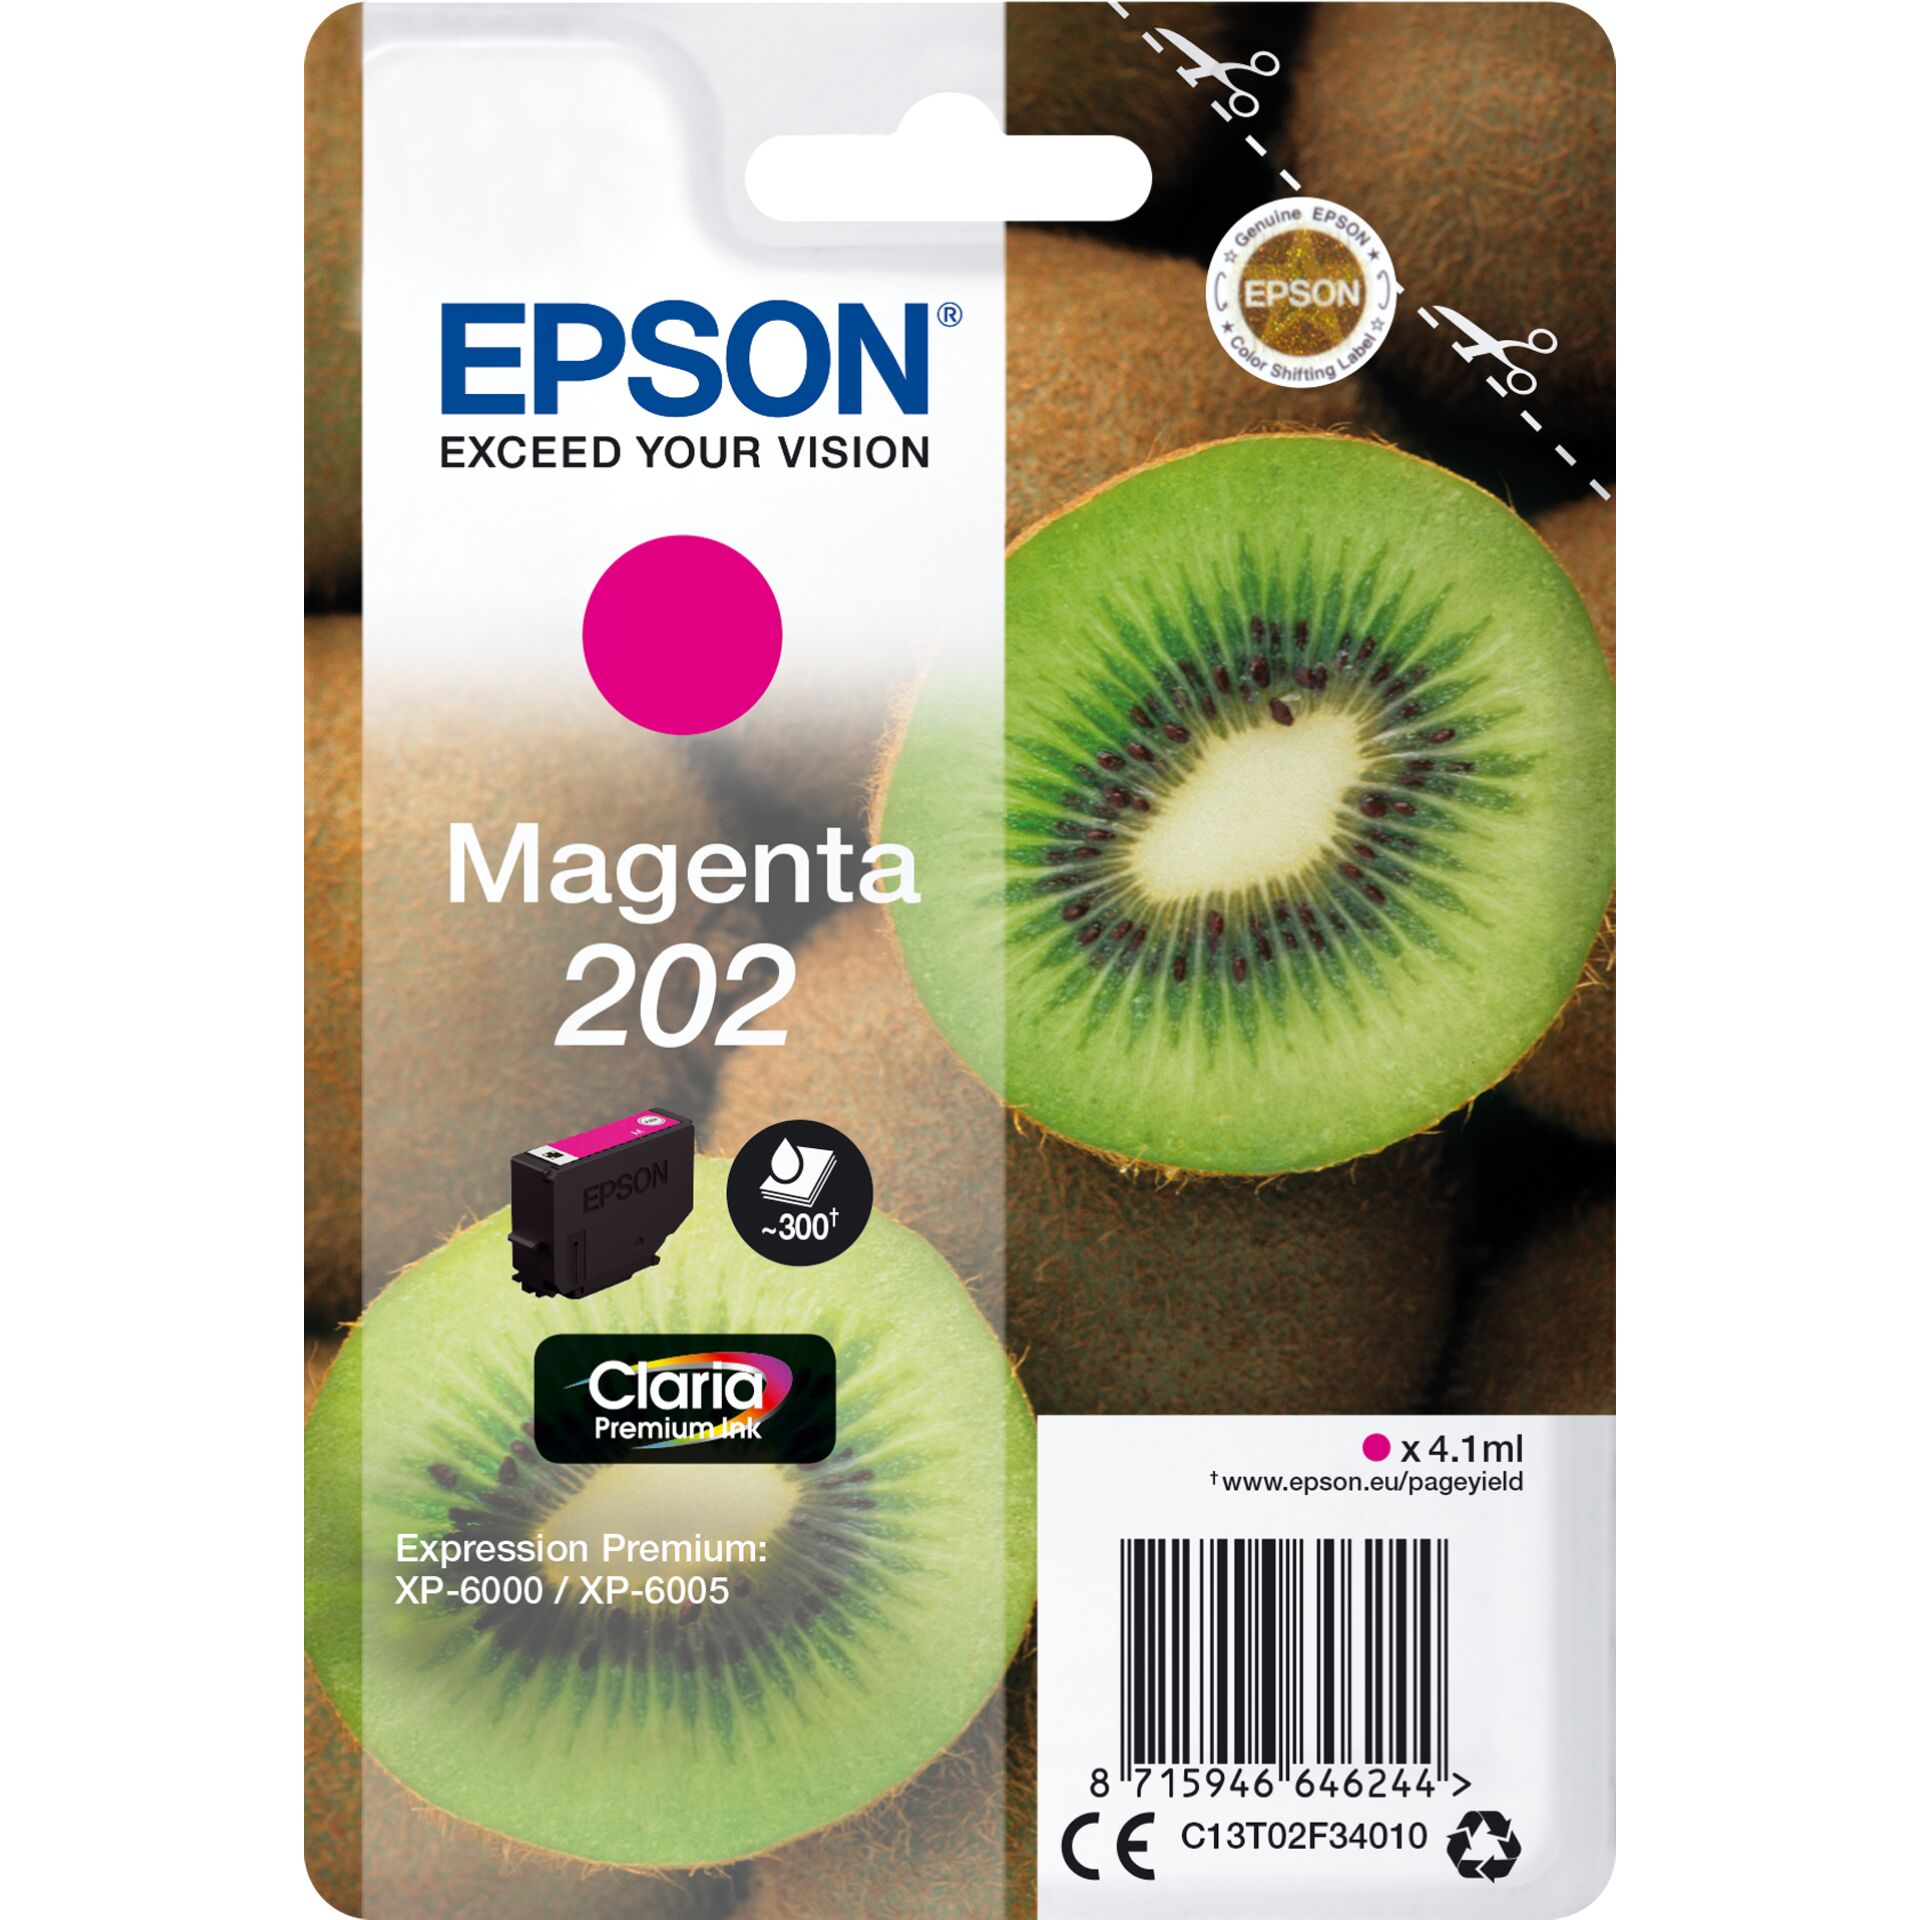 Epson Tinte 202 magenta 